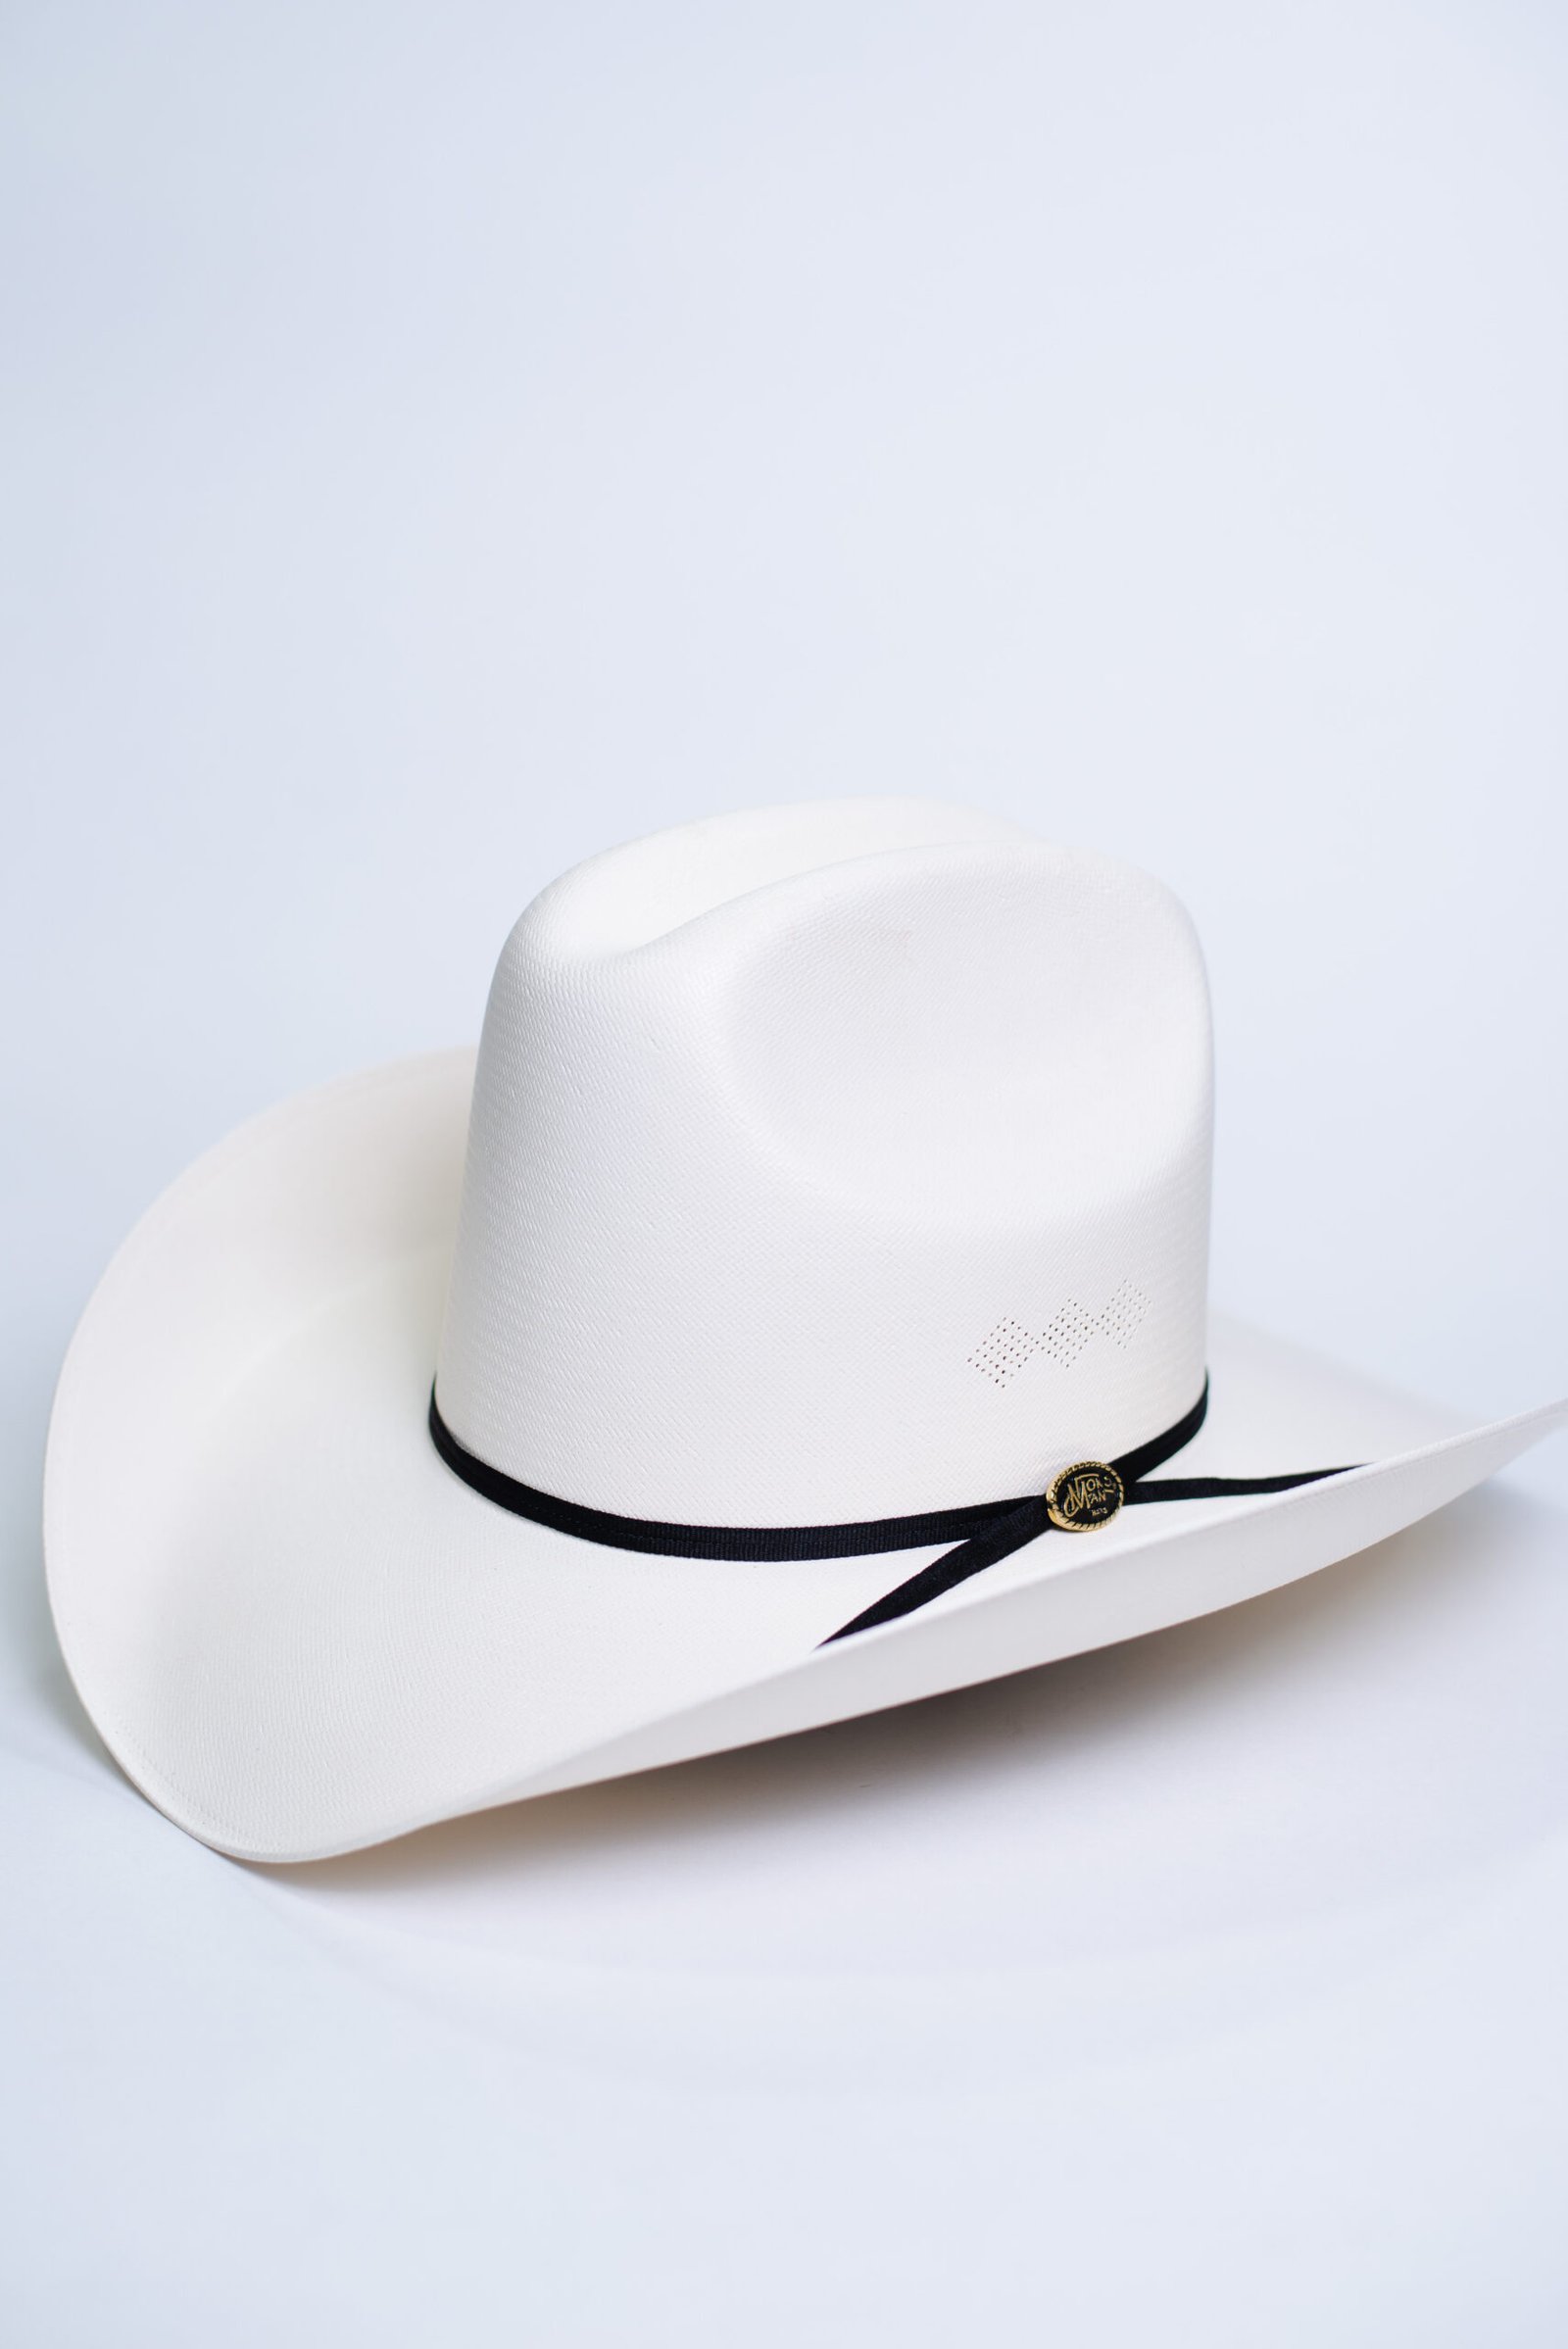 Sombrero Blanco LUI - Cacique Hats